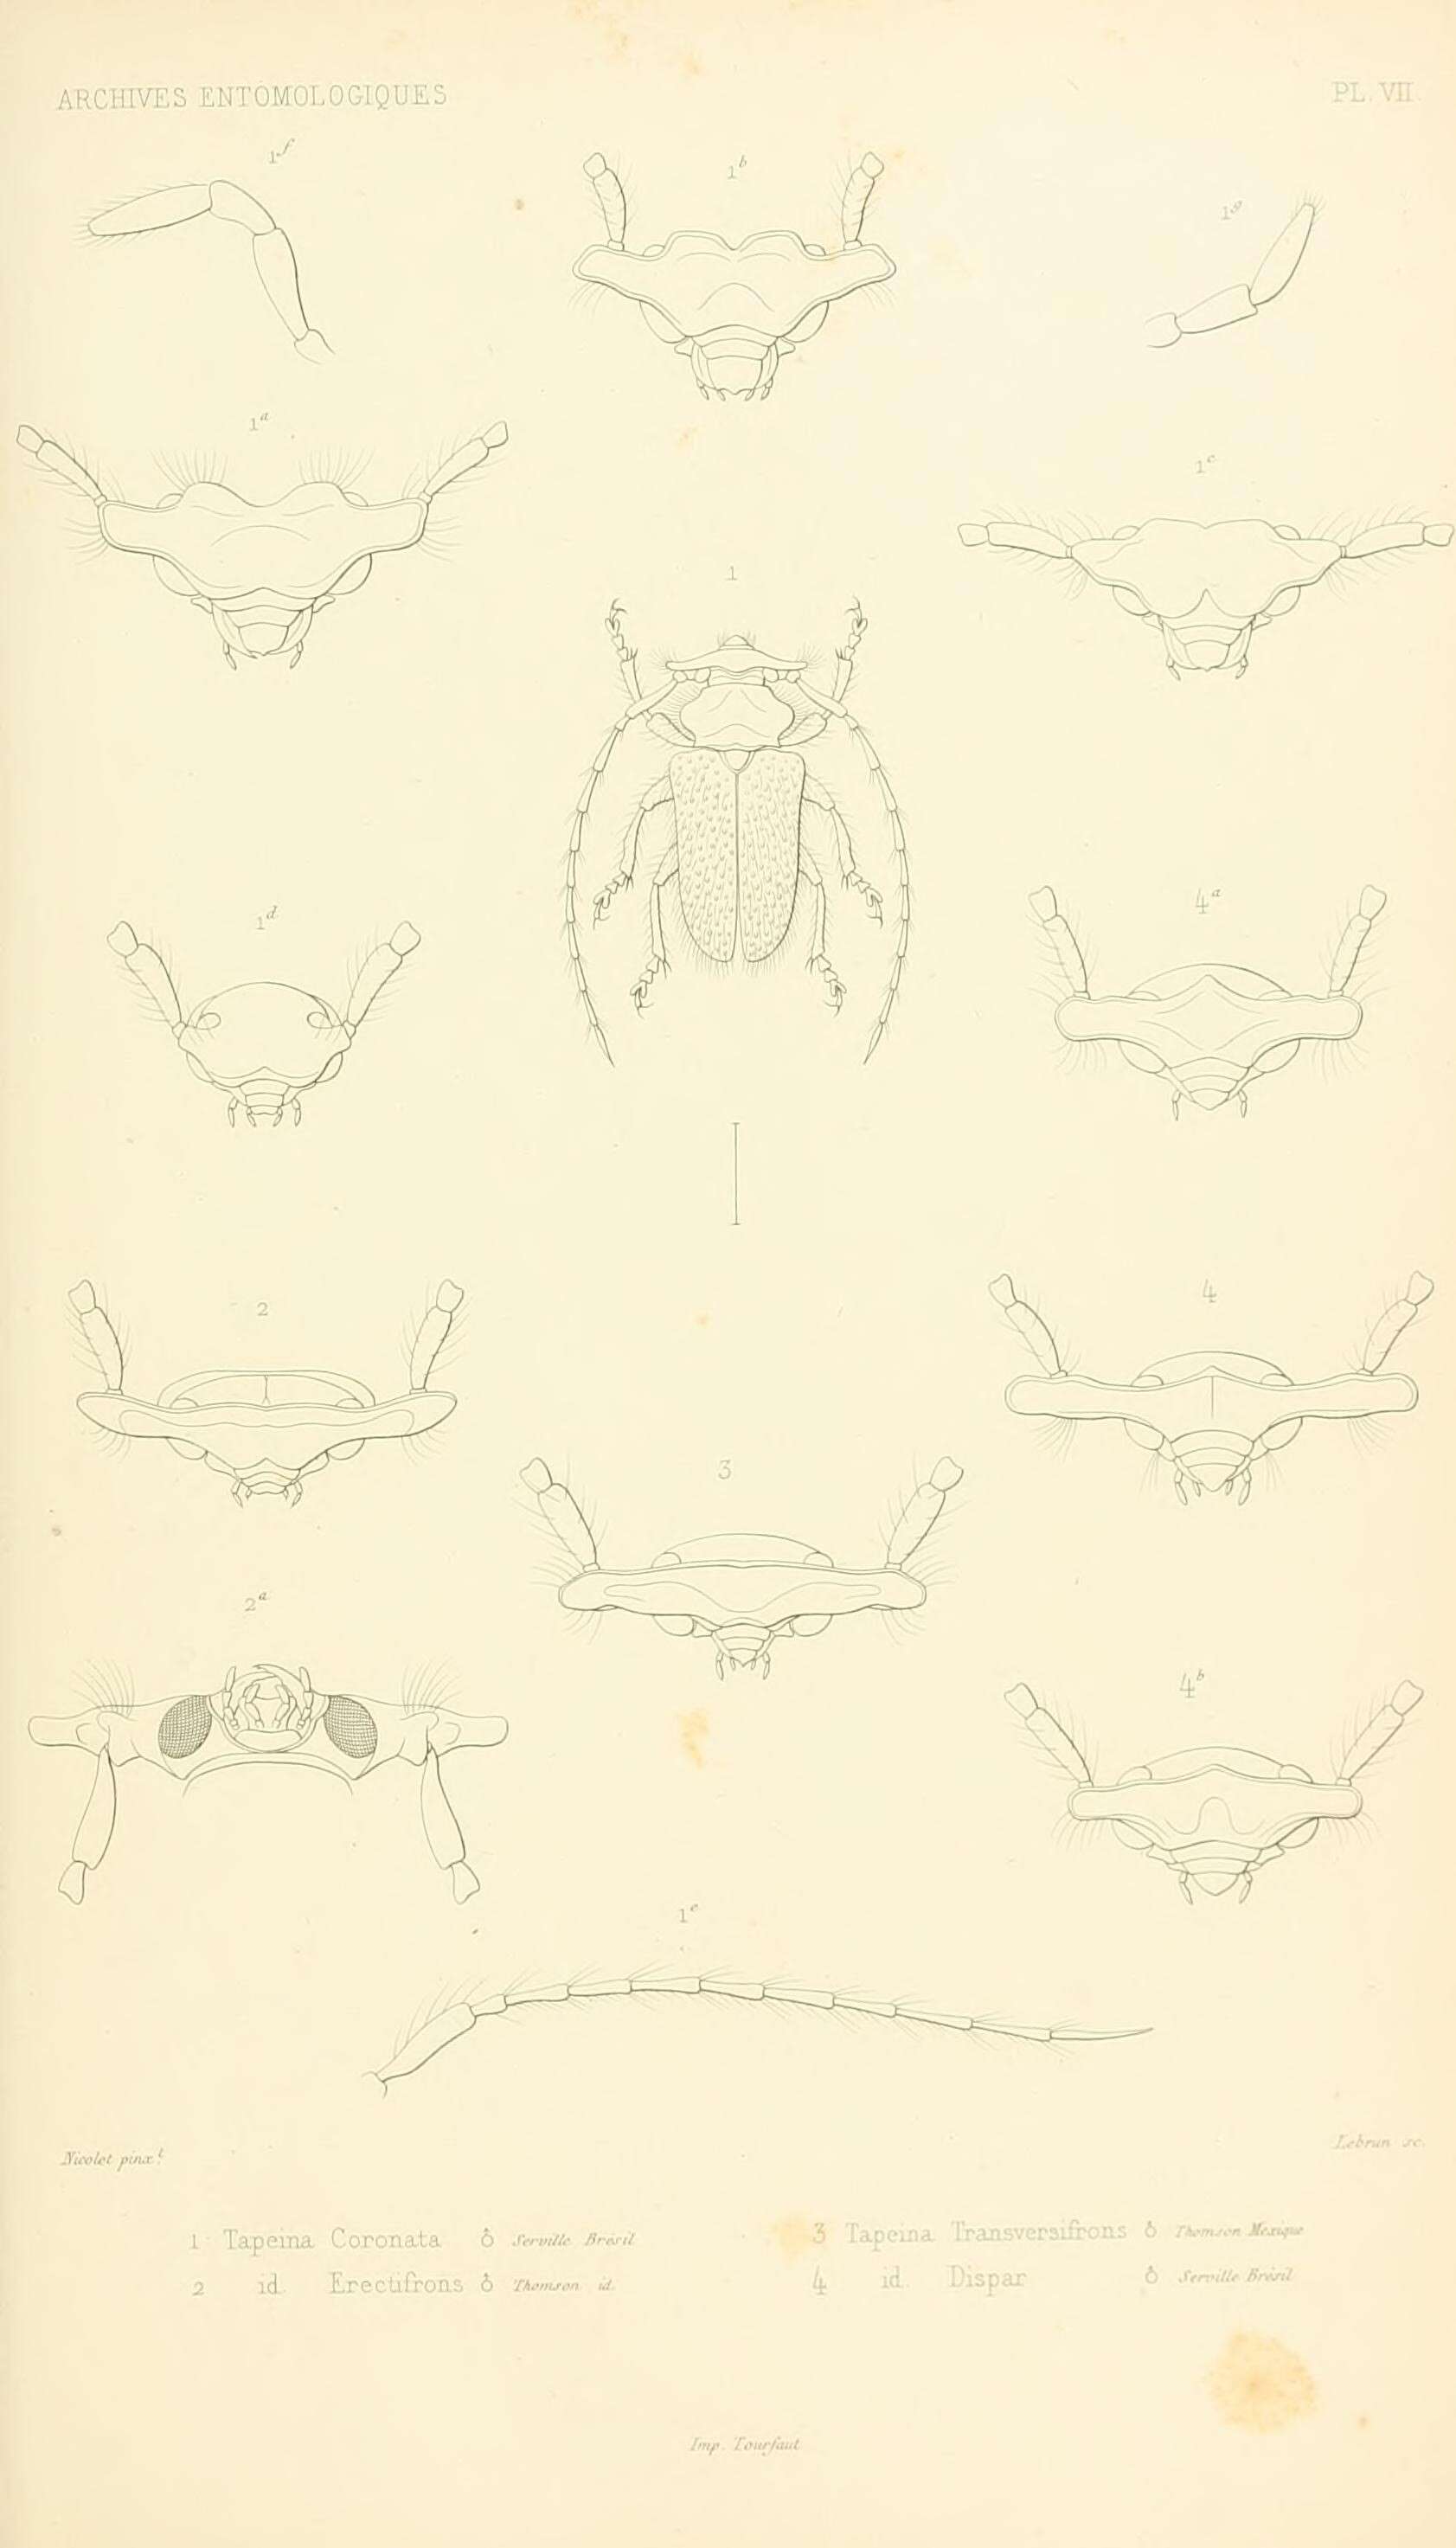 Sivun Tapeina coronata Lepeletier & Audinet-Serville 1828 kuva